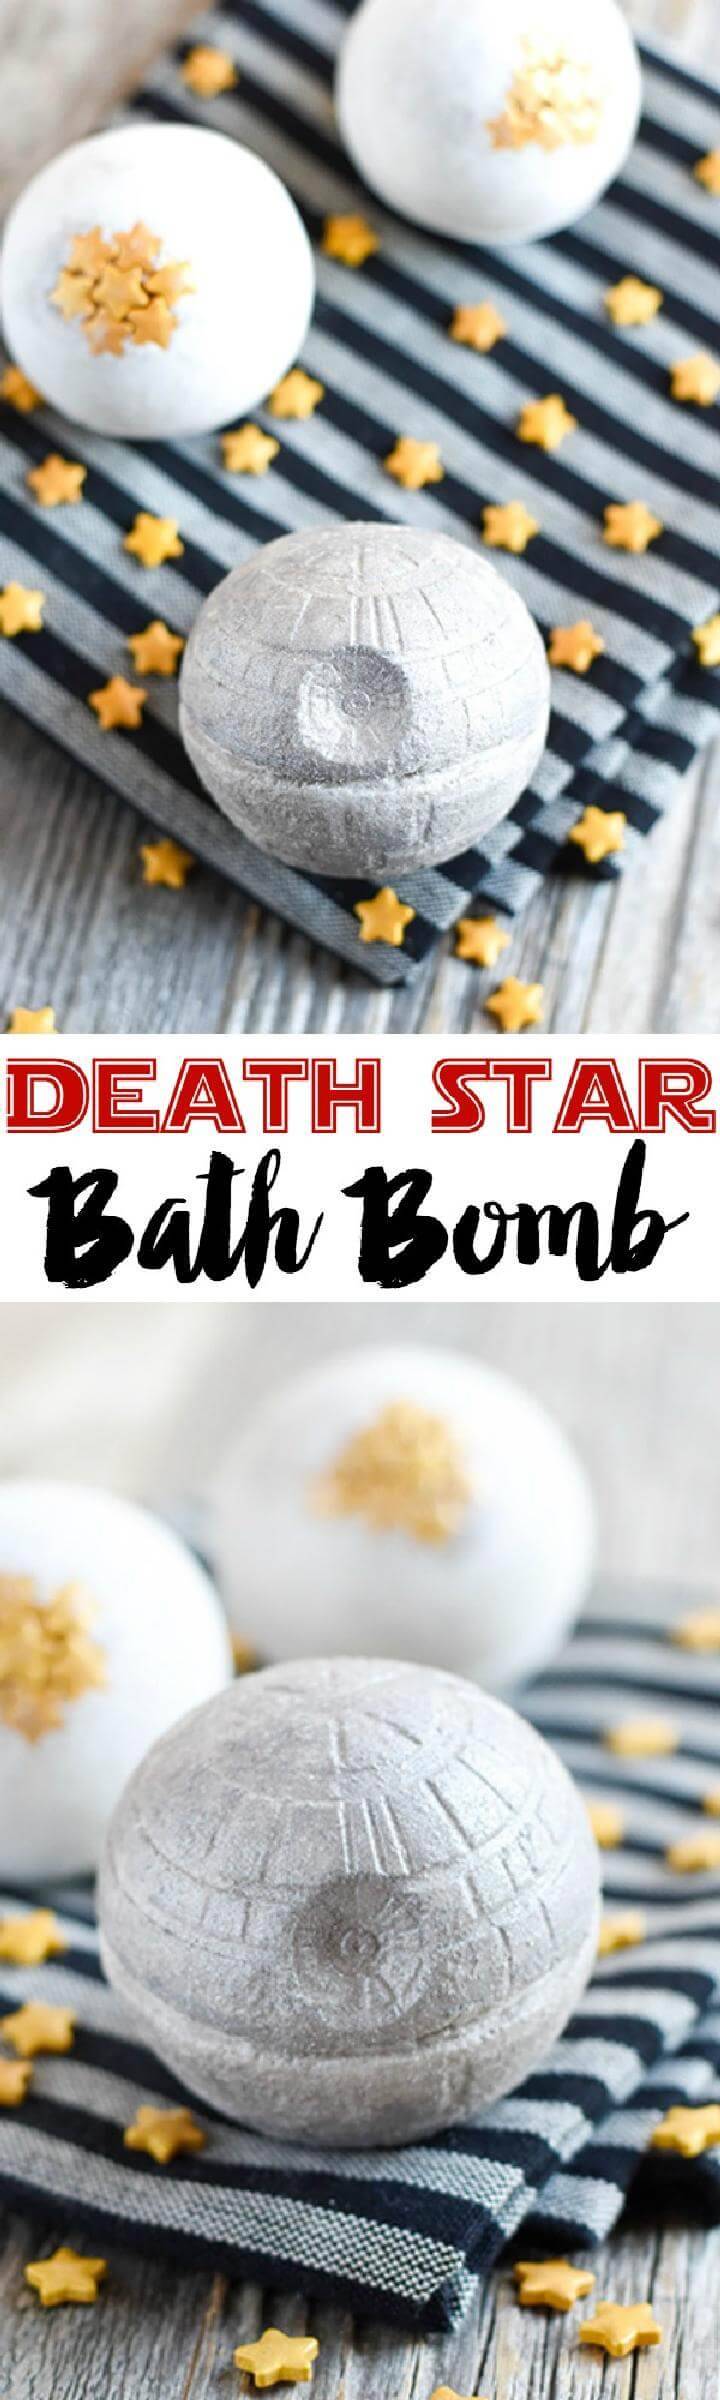 DIY Beautiful Death Star Bath Bomb